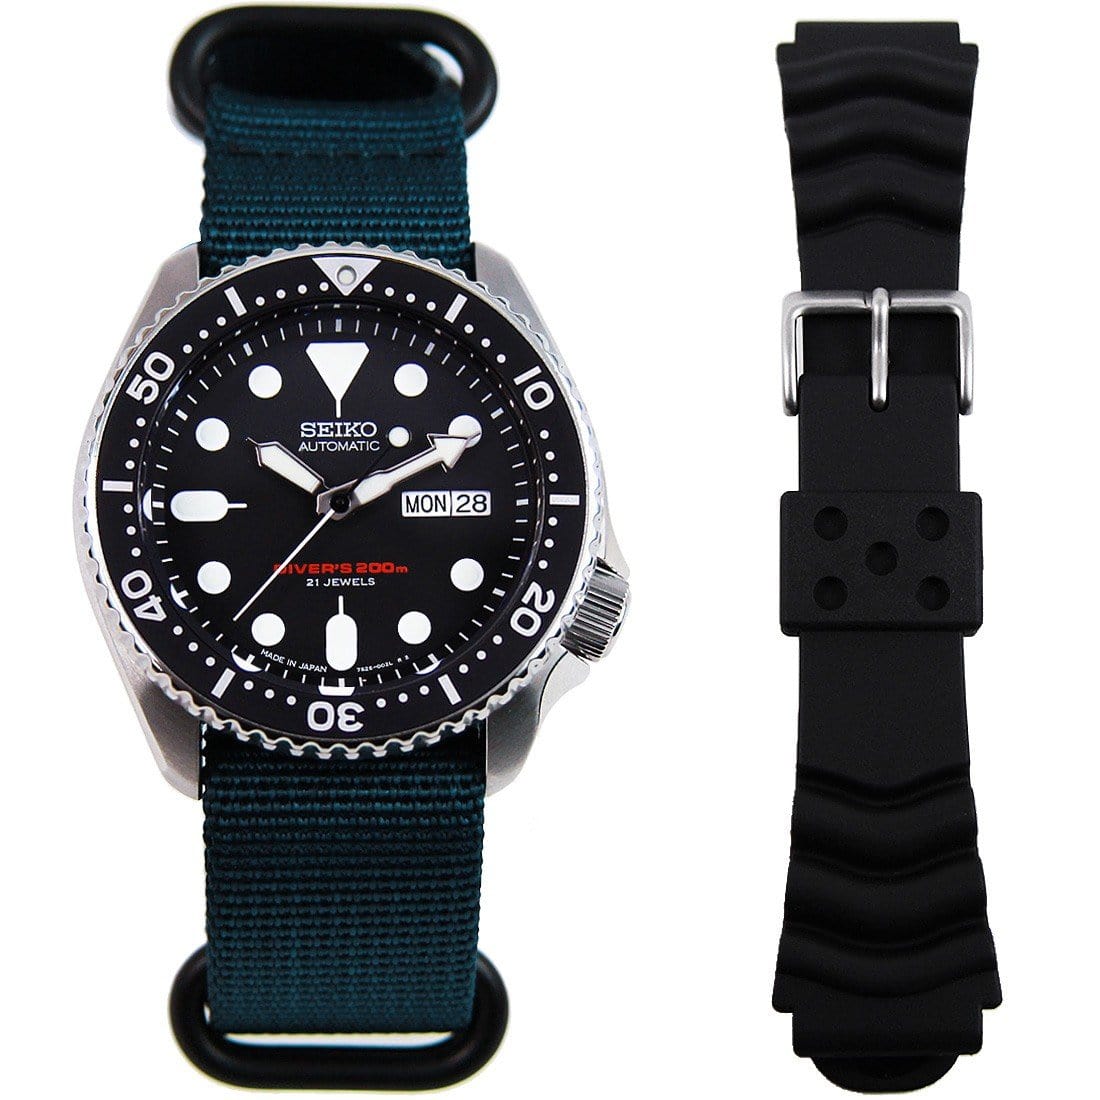 Seiko Automatic Watch SKX007J SKX007J1 with Extra Nylon Strap